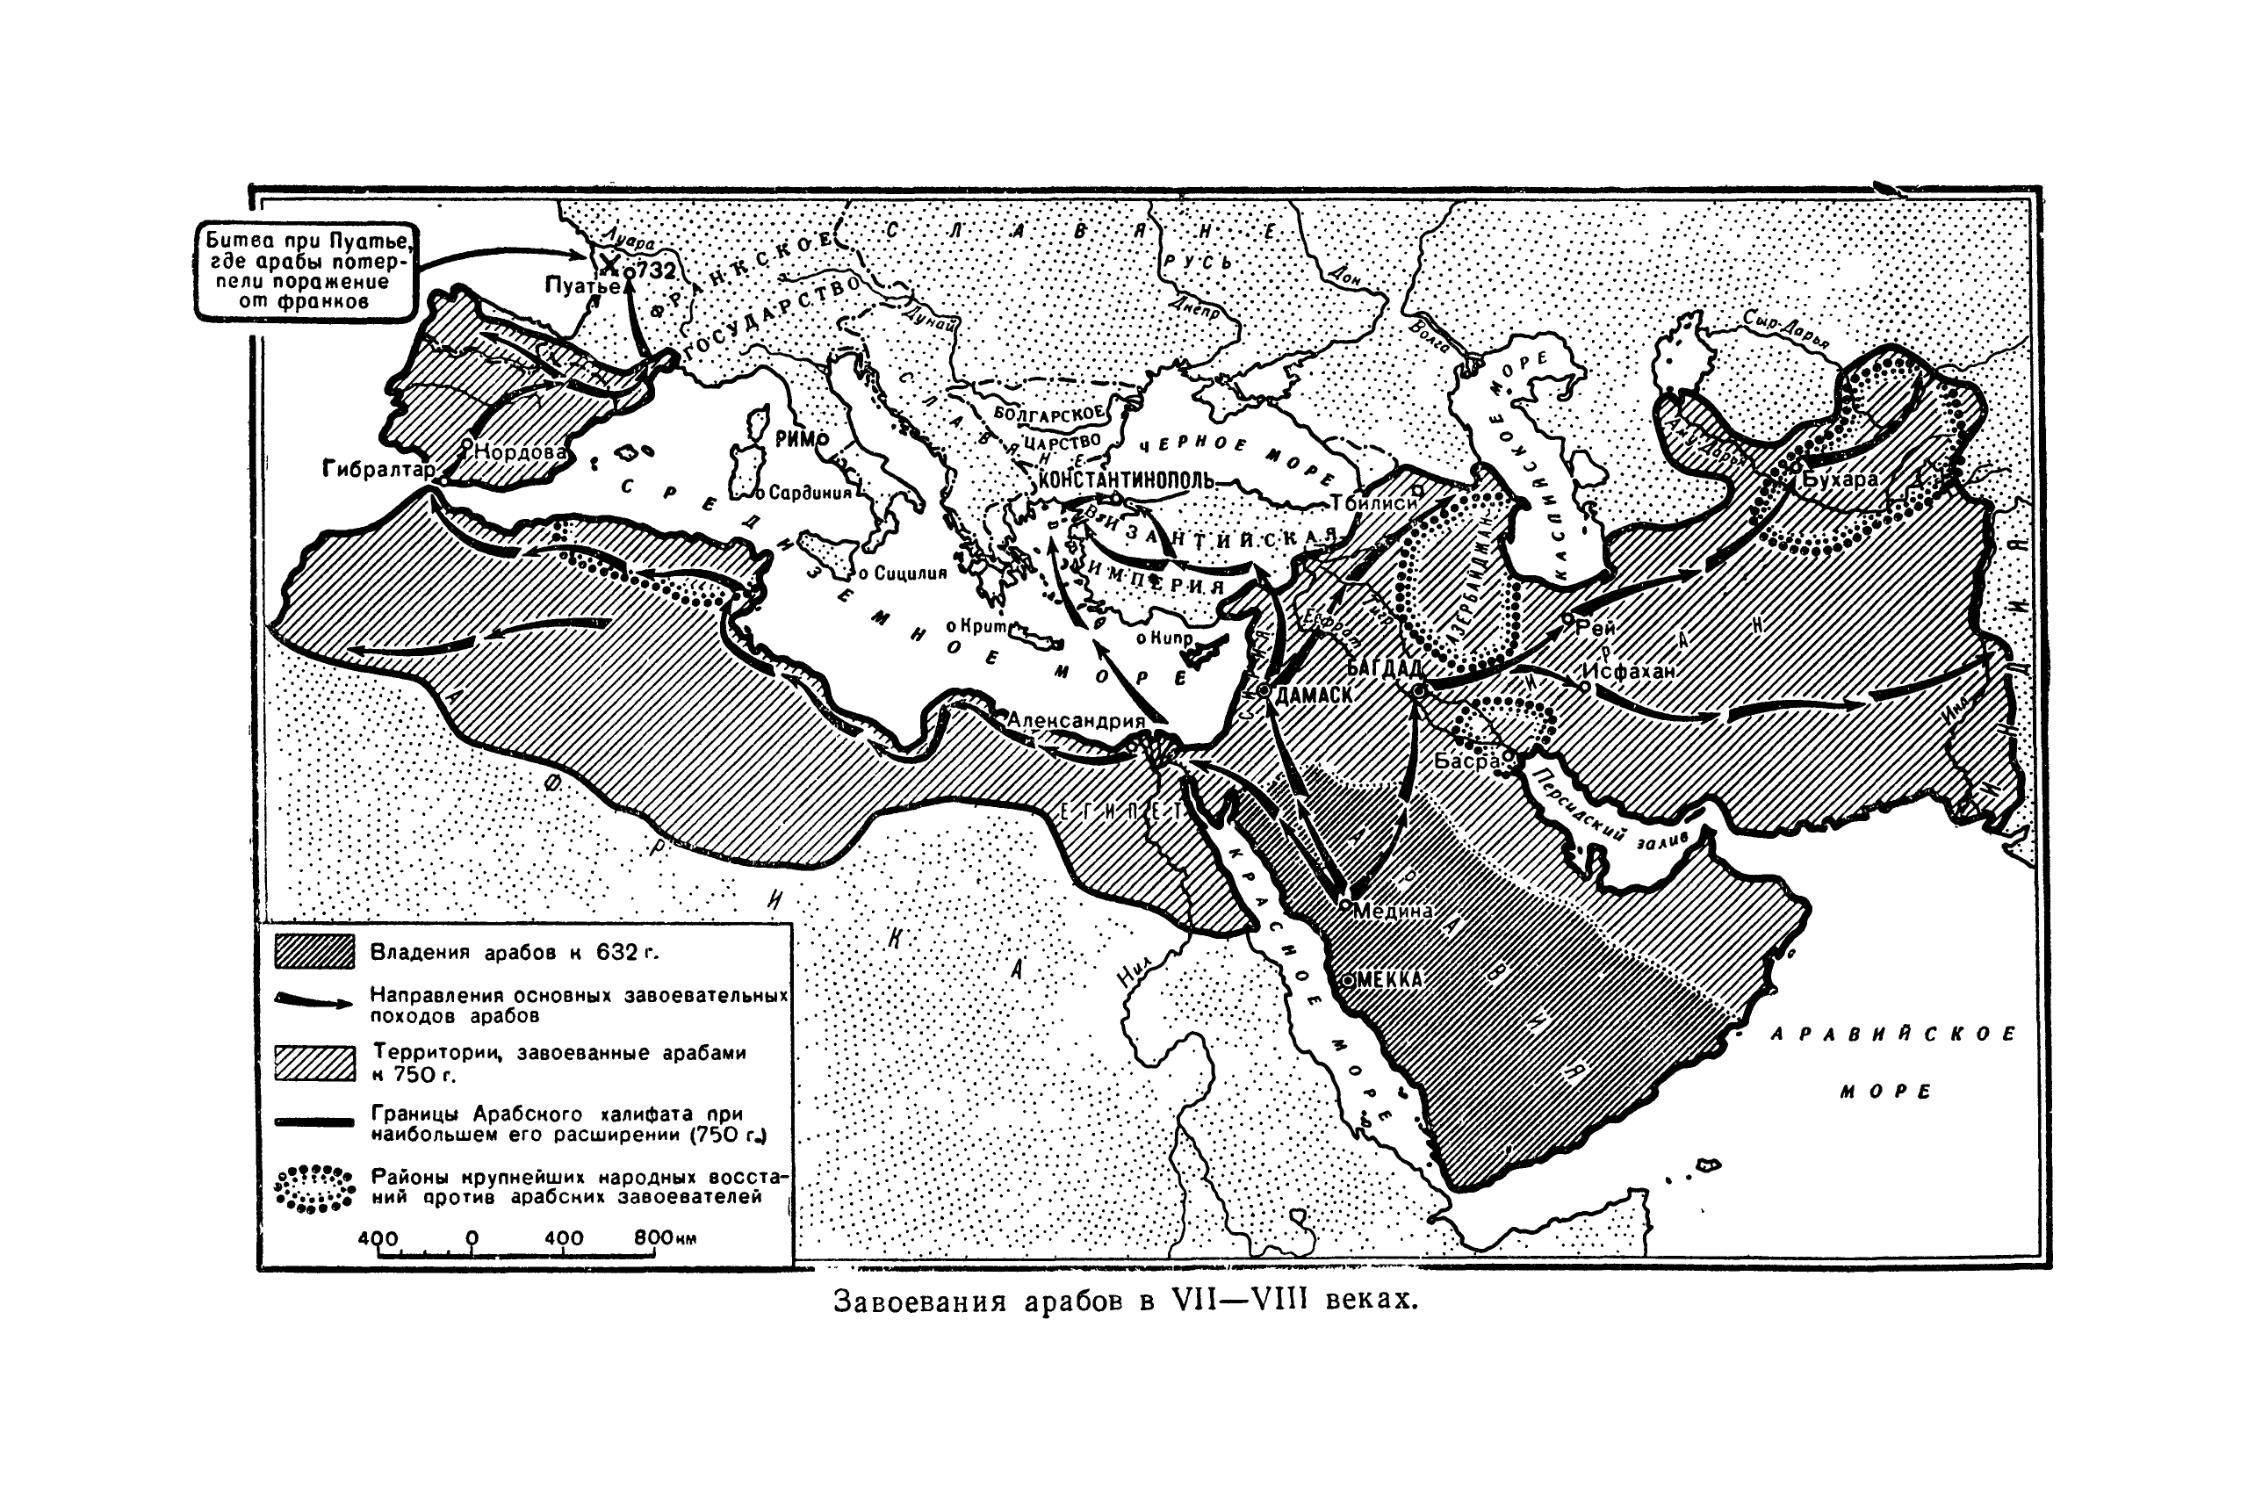 Арабский халифат на контурной карте. Карта завоевания арабов в 7-9 веках арабский халифат. Карта арабских завоеваний в 7 9 веках. Завоевания арабов в 7-9 веках арабский халифат контурная карта. Завоевания арабов в 7-9 веках контурная карта.